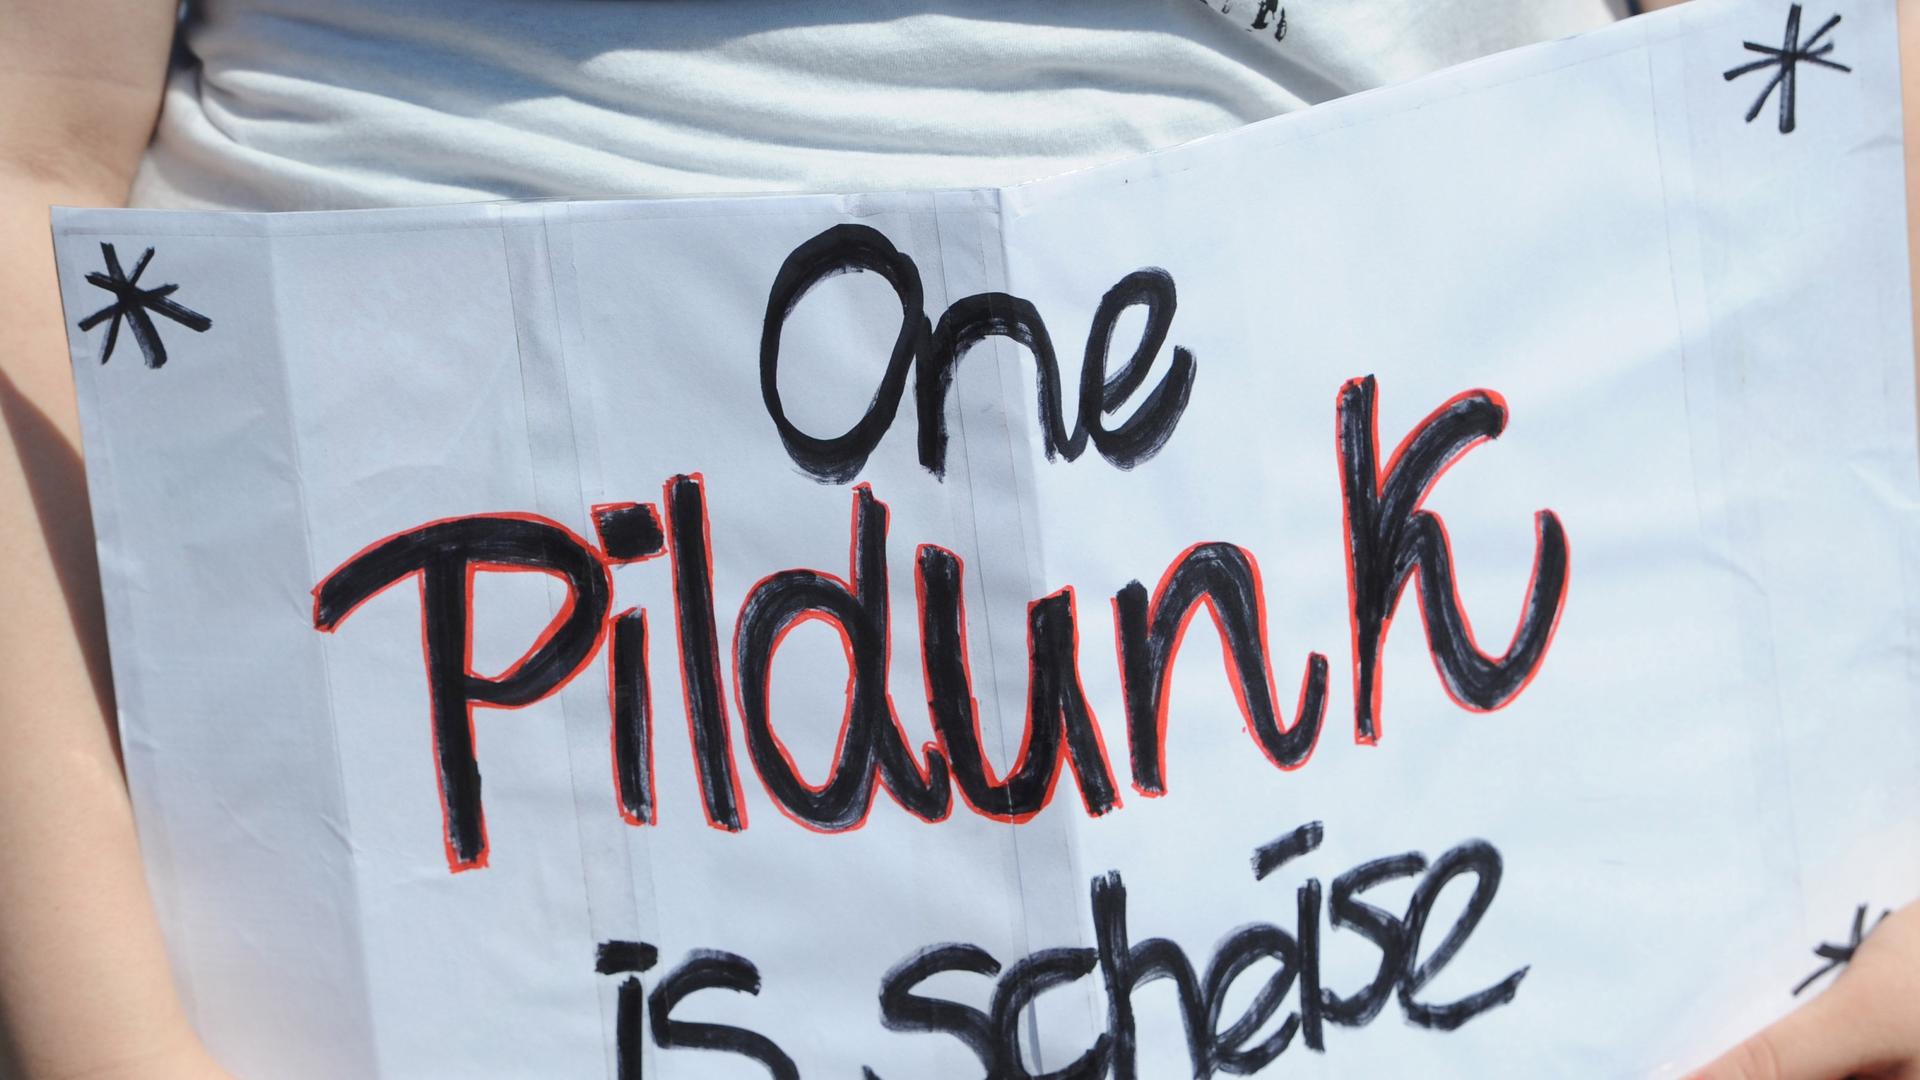 Studenten demonstrieren am 20.05.2014 vor dem Max-Planck-Institut für Plasmaphysik in Greifswald (Mecklenburg-Vorpommern) gegen die Unterfinanzierung der Hochschulen. Auf einem Plakat steht: "One Pildunk is scheise".